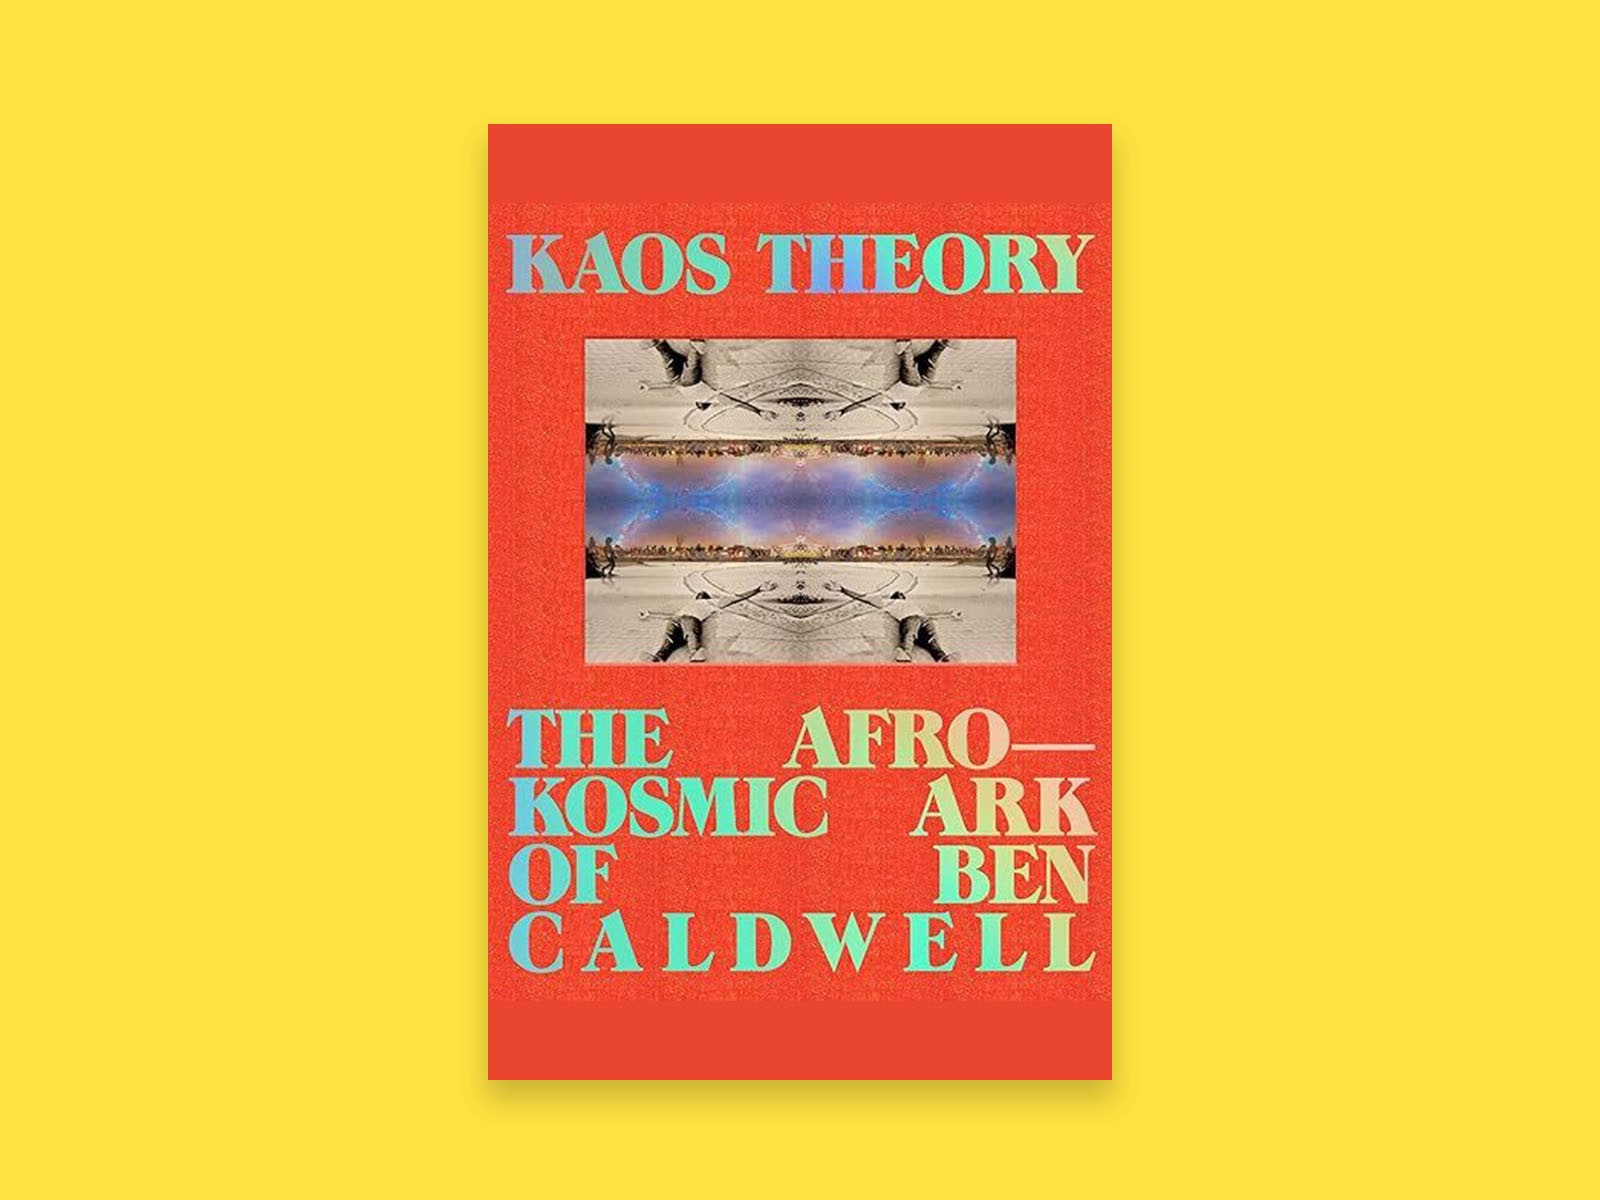 Buchcover von „KAOS Theory“ auf gelbem Hintergrund.